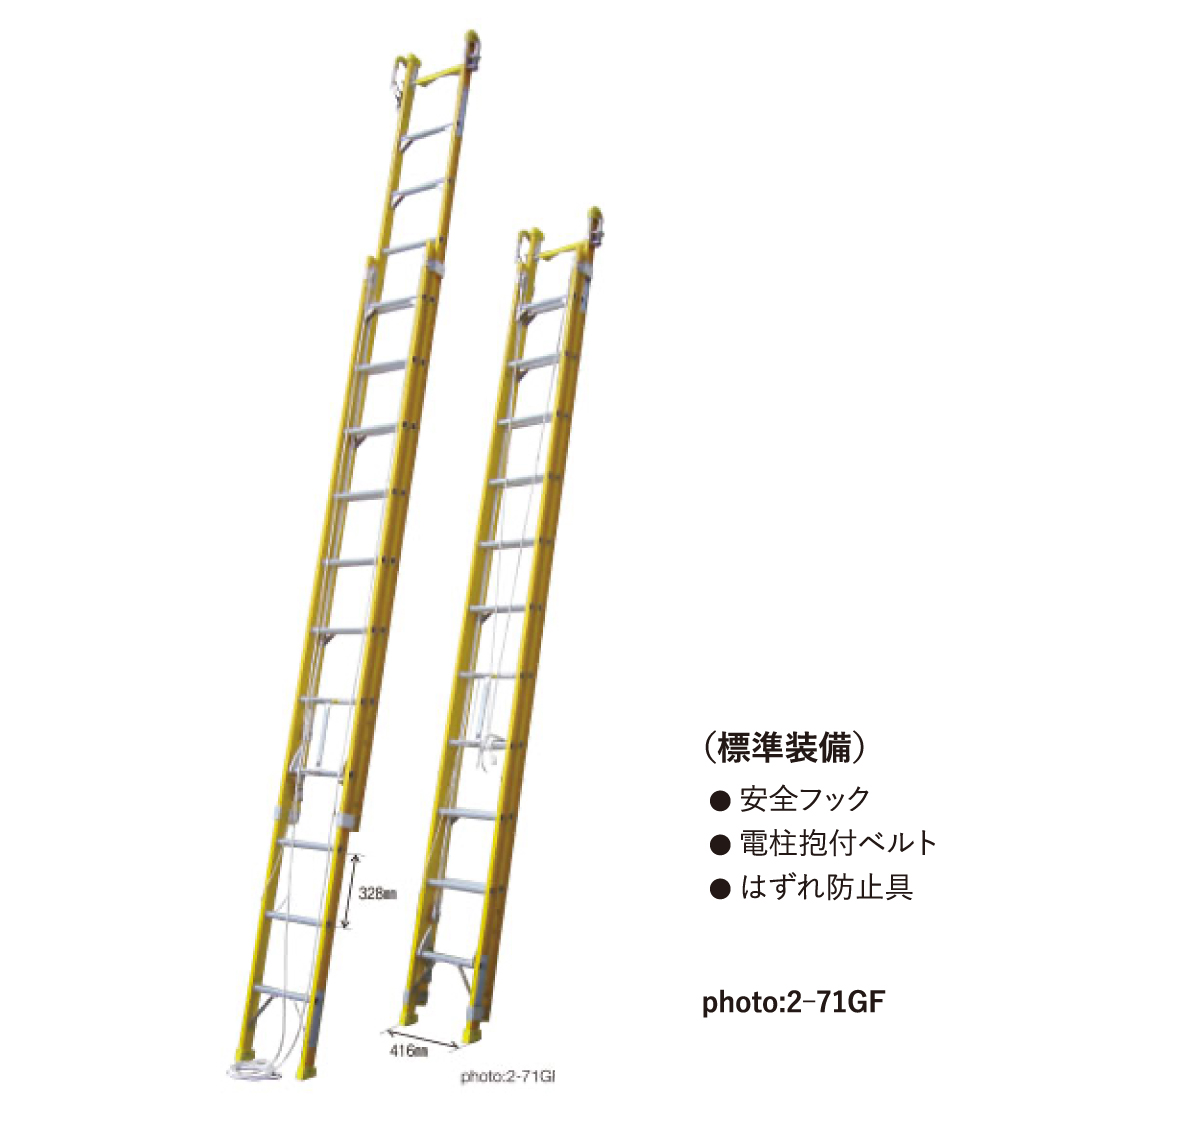 バンボ(二連伸縮はしご)　2-65GF-